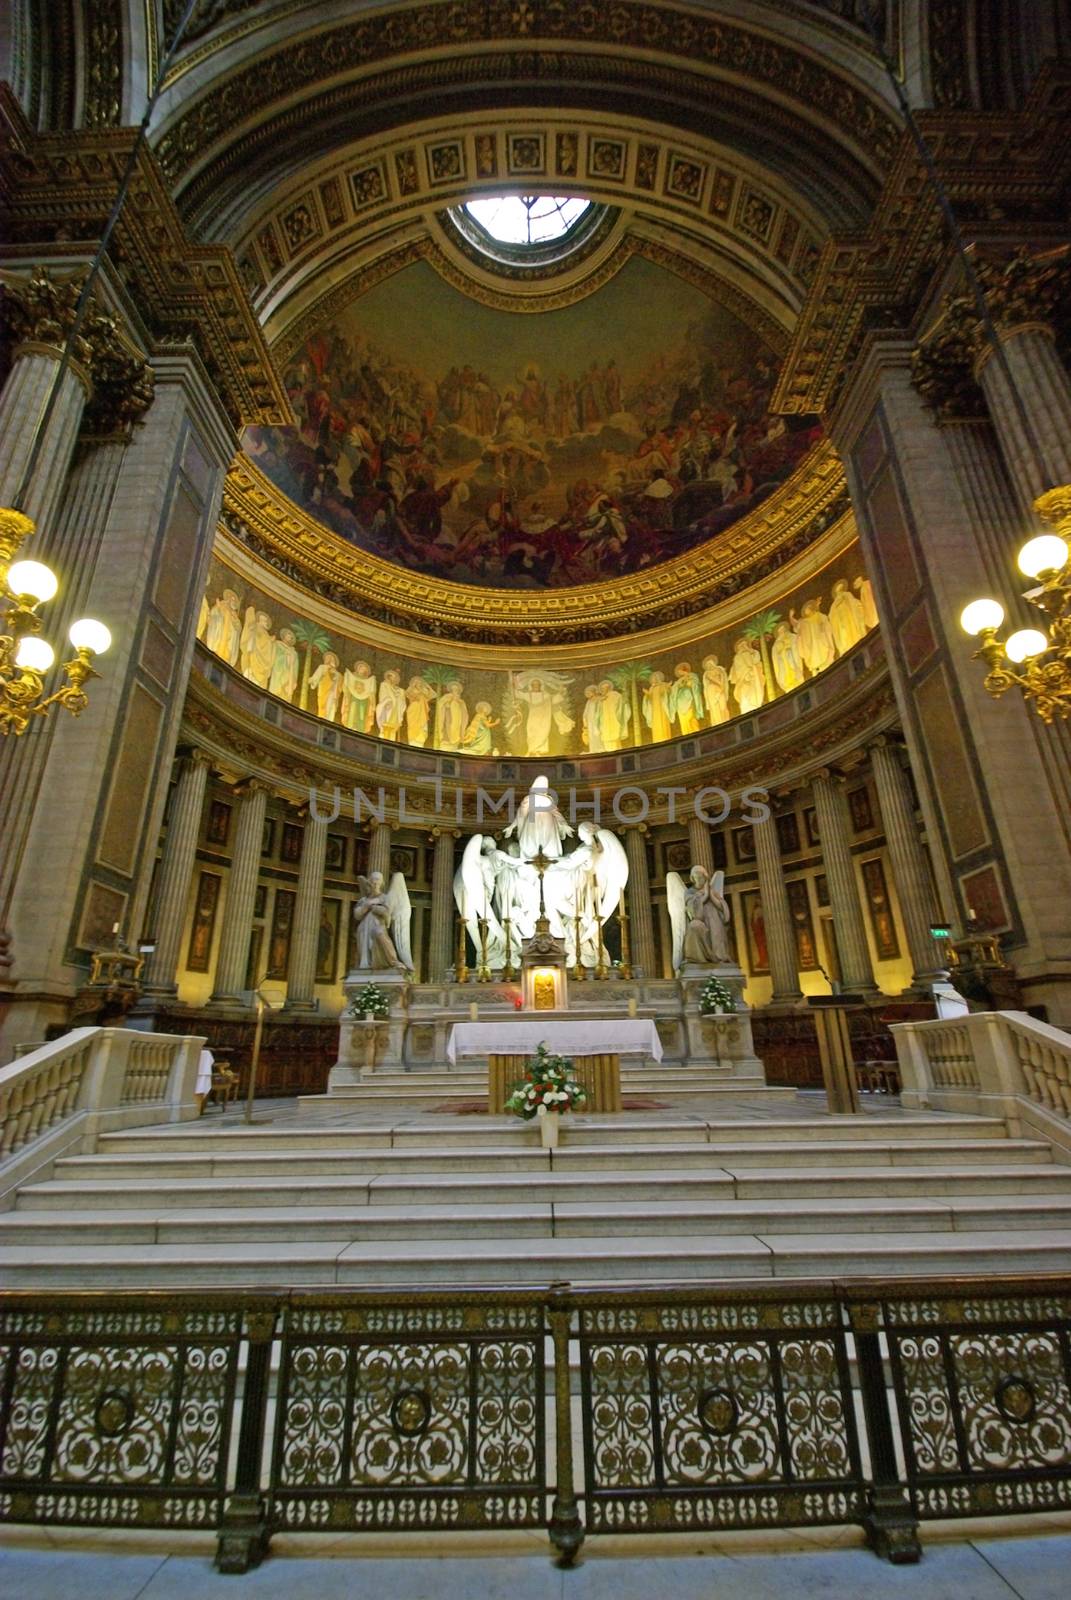 Inside of Madeleine church in Paris.